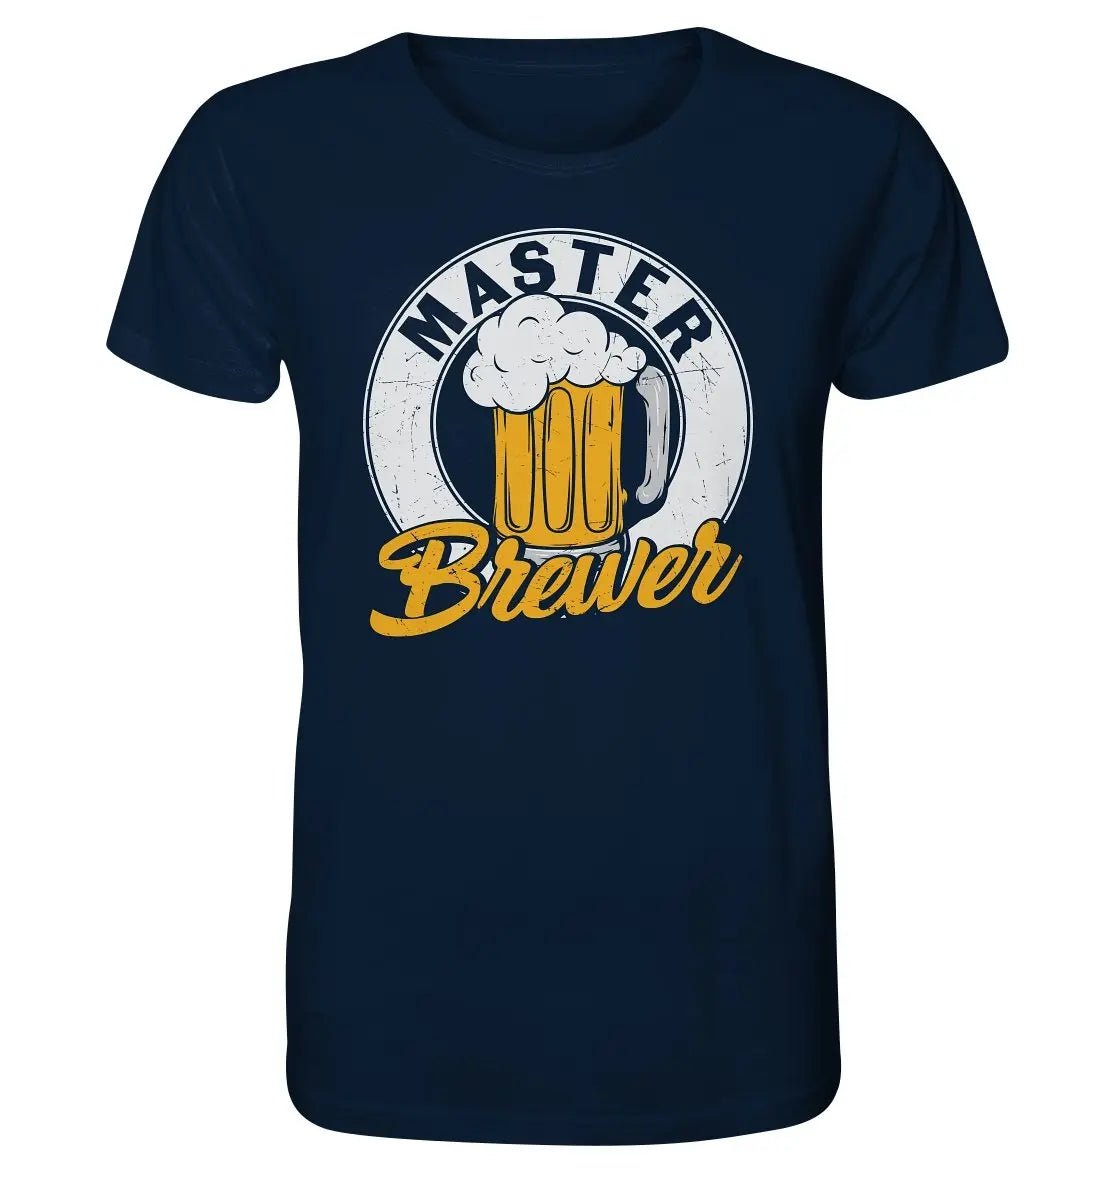 Ein marineblaues Master Brewer - Bio-T-Shirt von Hoppymerch mit der Aufschrift „Master Brewer“.